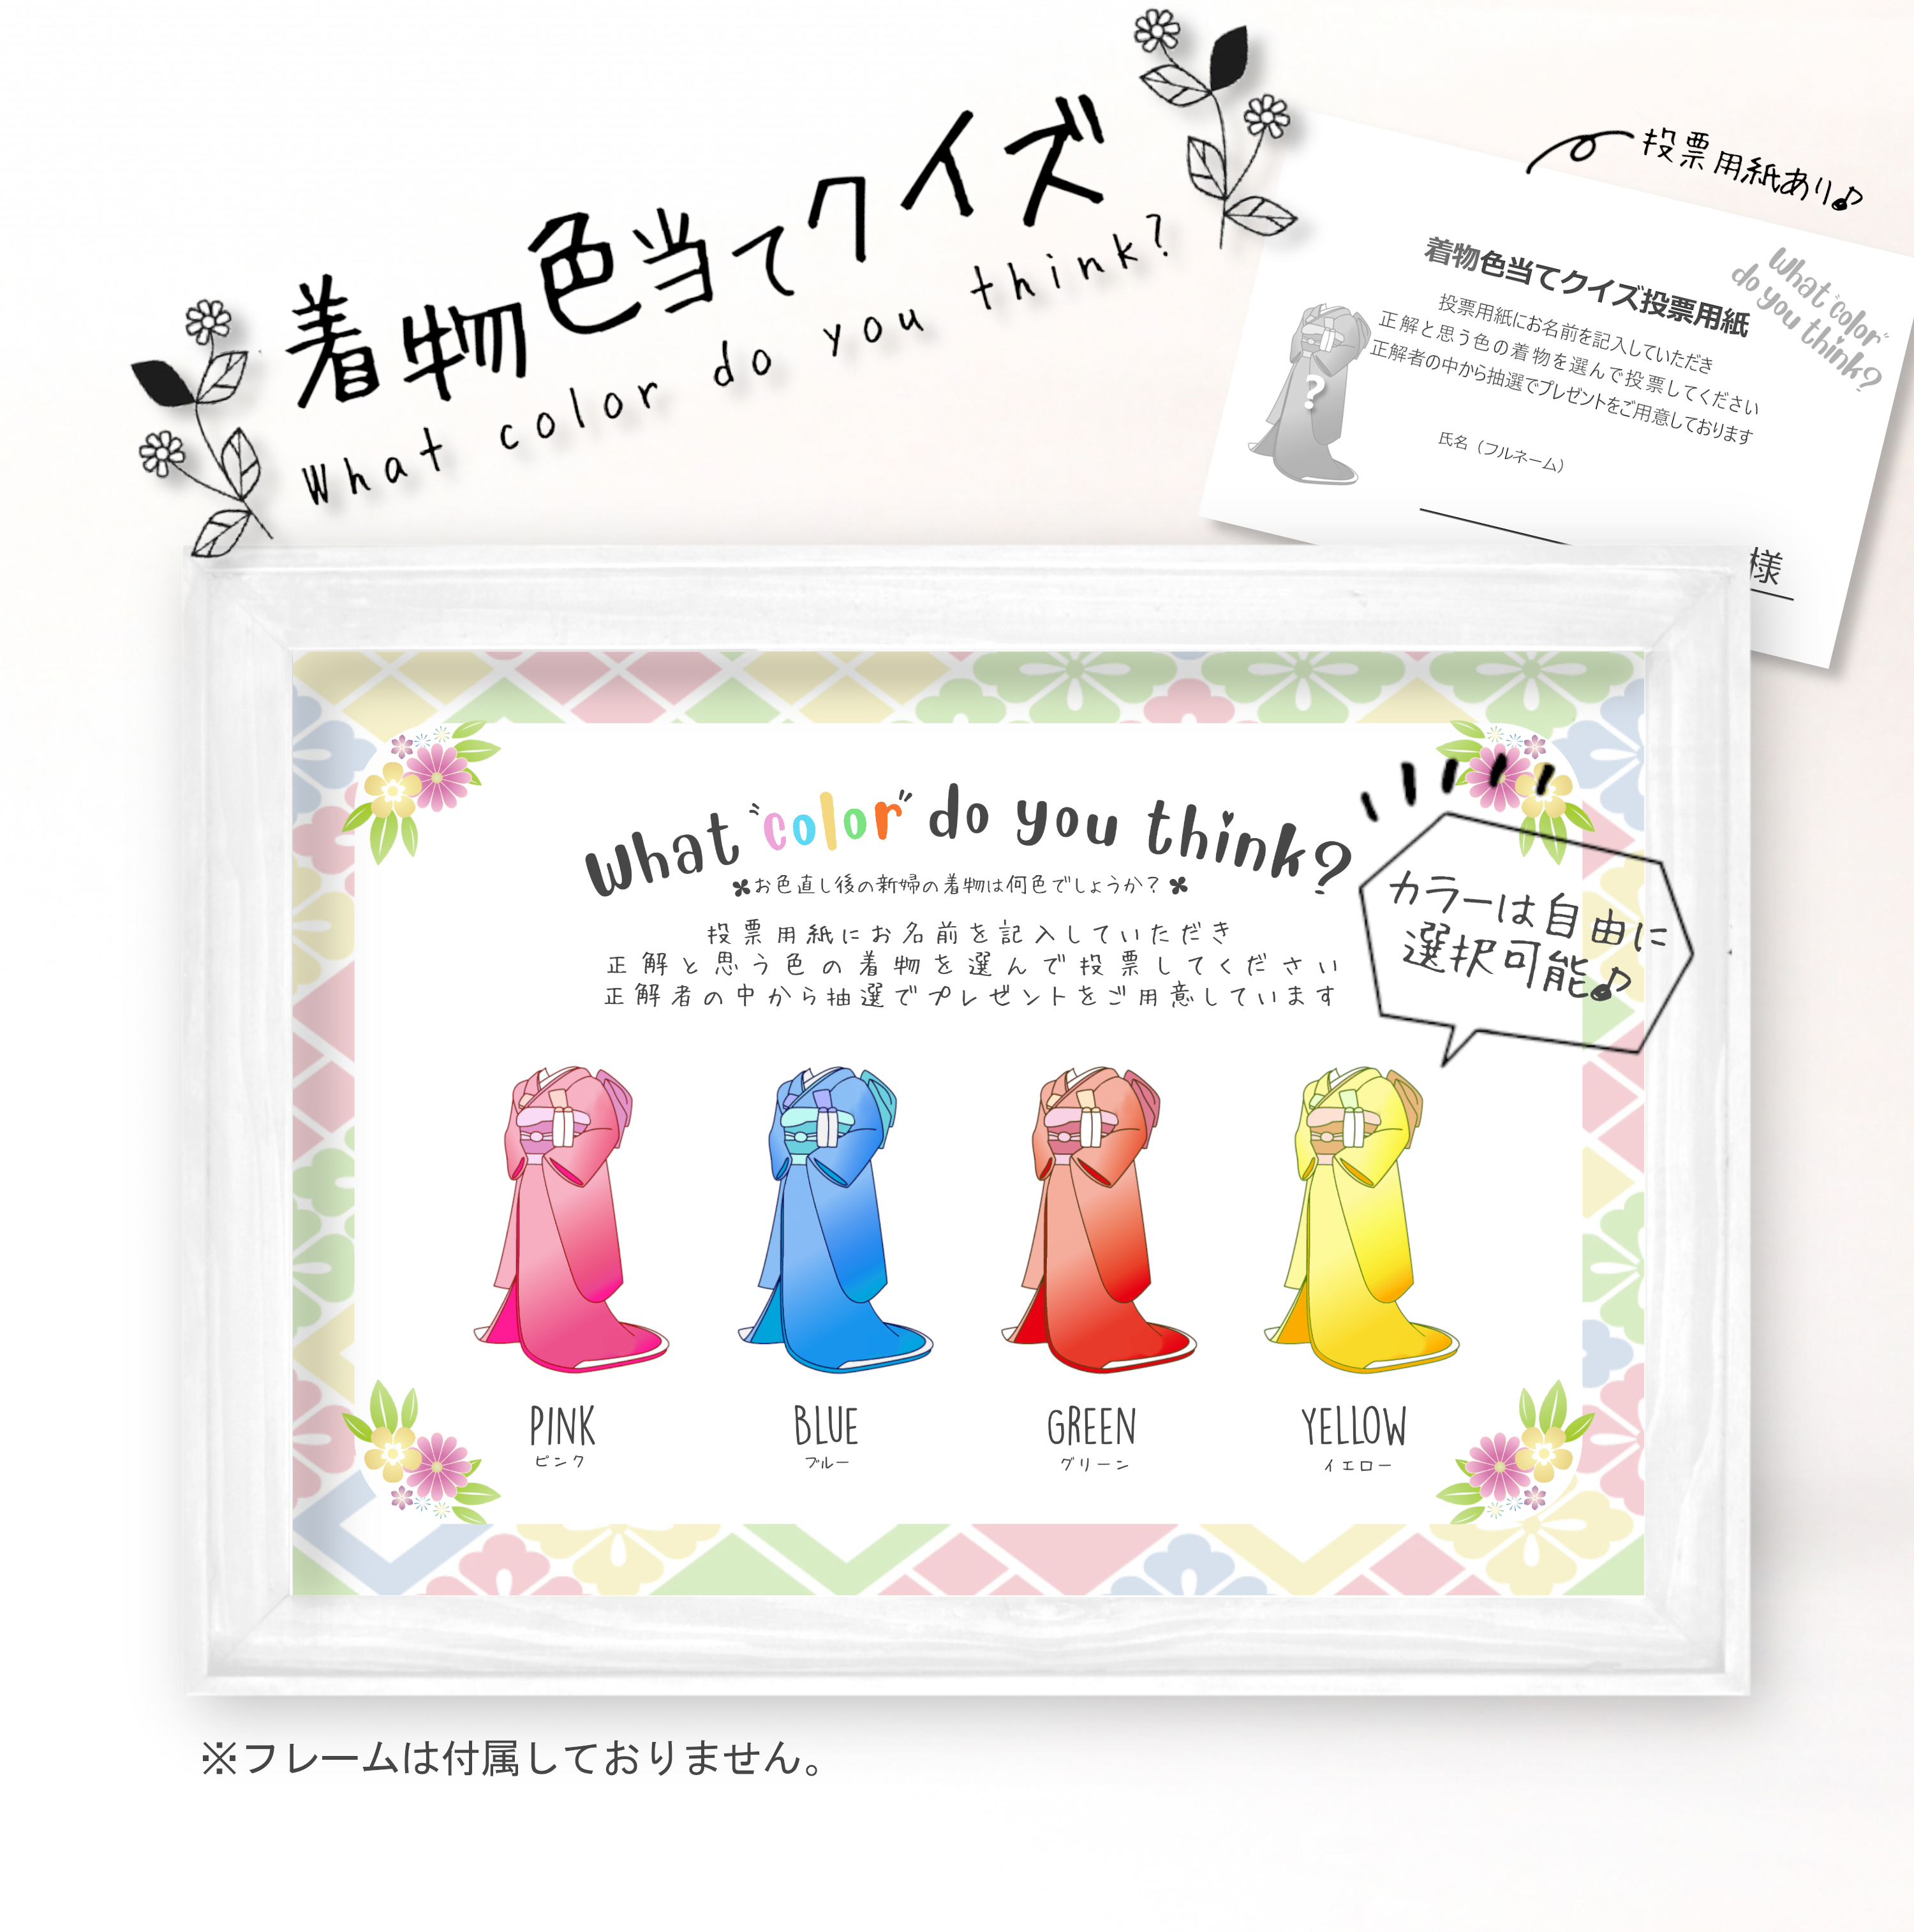 結婚式や二次会の定番ゲーム ドレス色当てクイズの和装バージョン Haru S Art Design ウェディング オリジナルイラスト